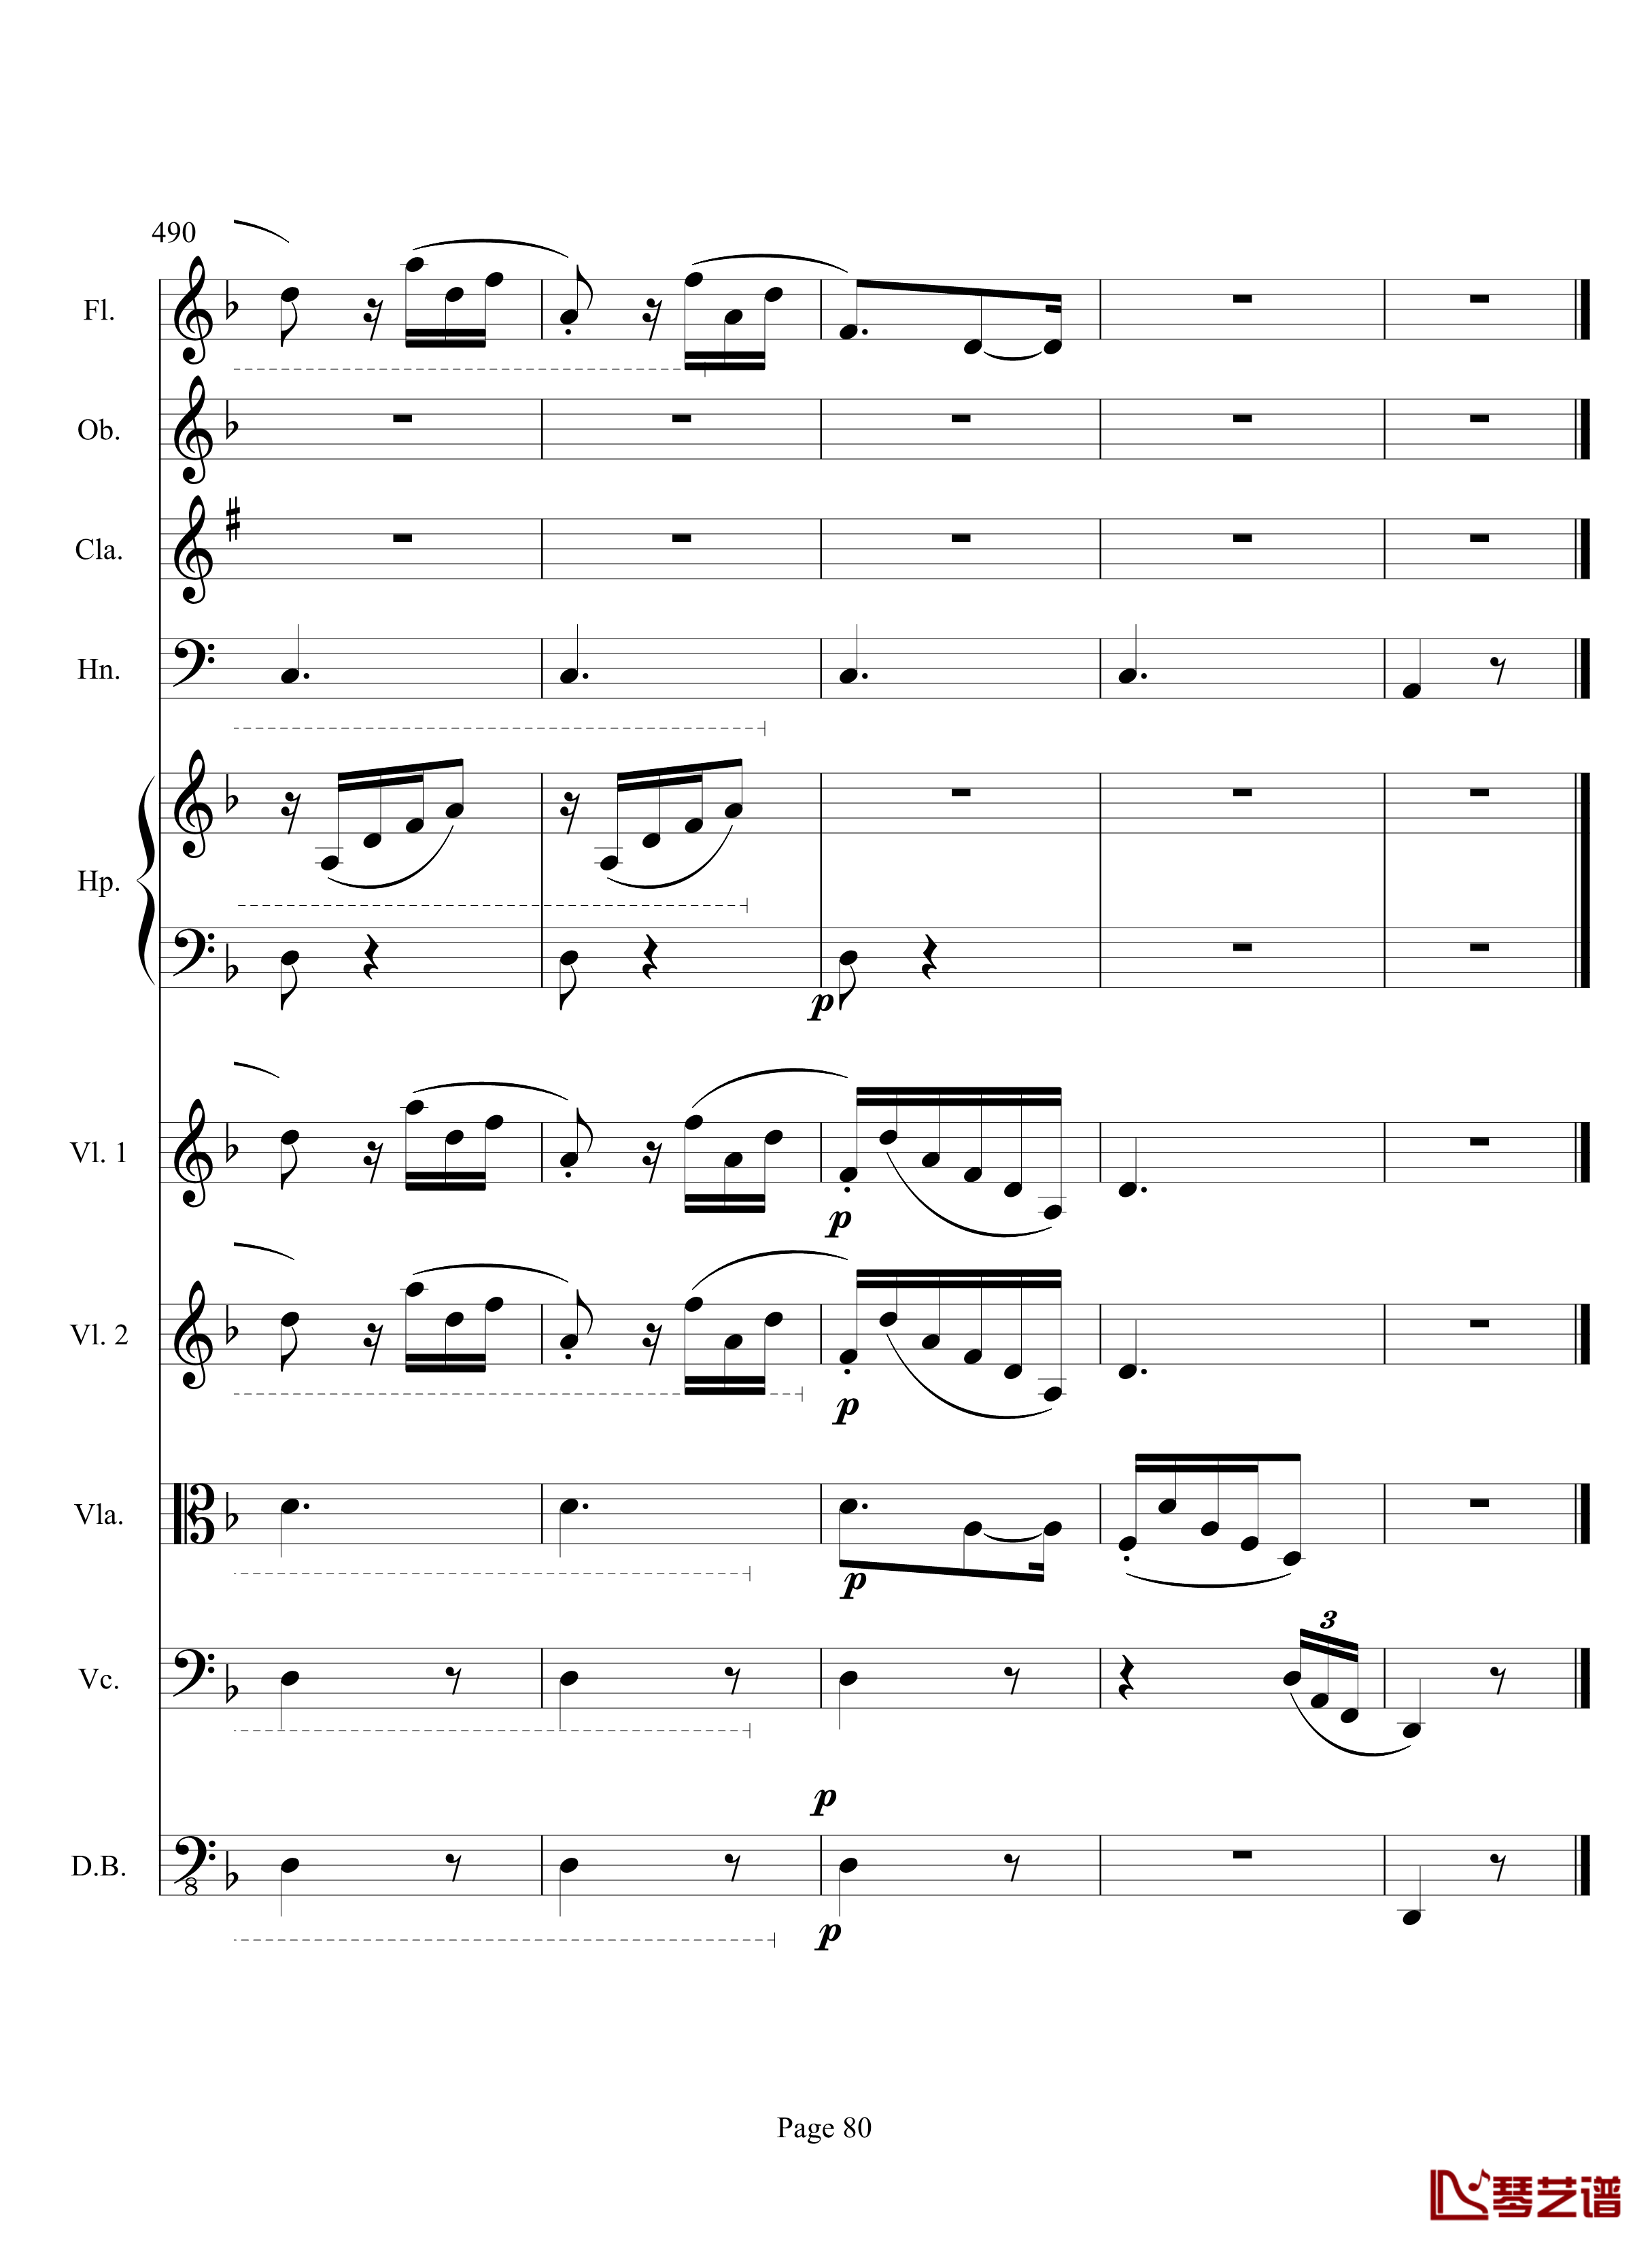 奏鸣曲之交响钢琴谱-第17首-Ⅲ-贝多芬-beethoven80